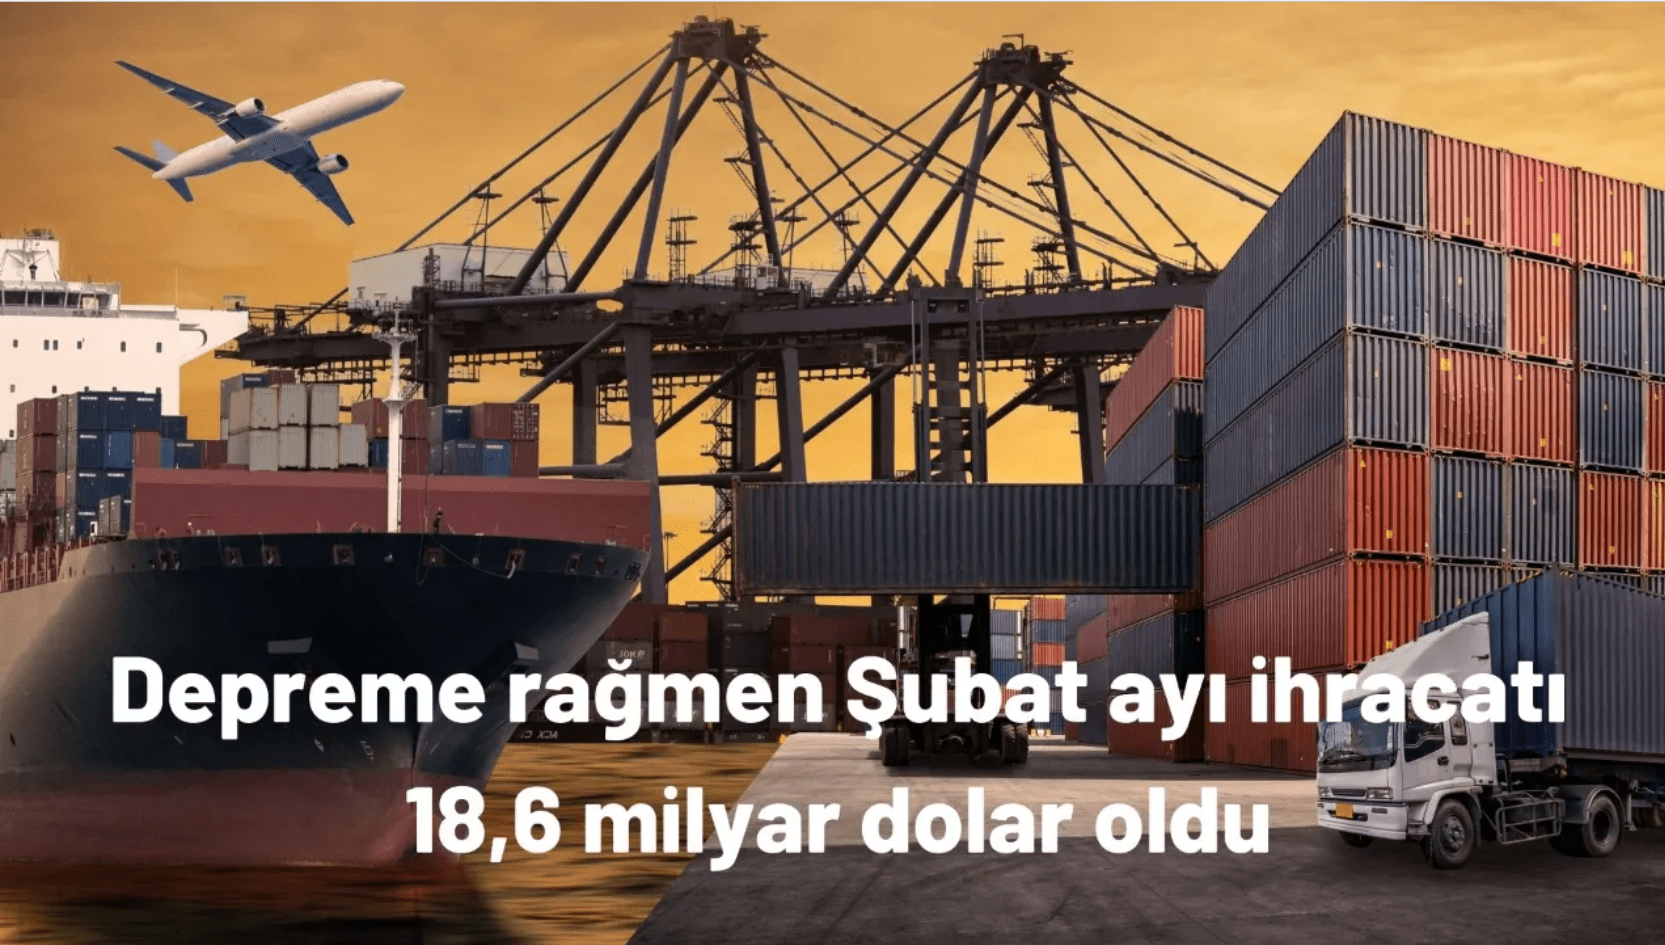 Depreme rağmen Türkiye’nin şubat ayı ihracatı 18,6 milyar dolar oldu